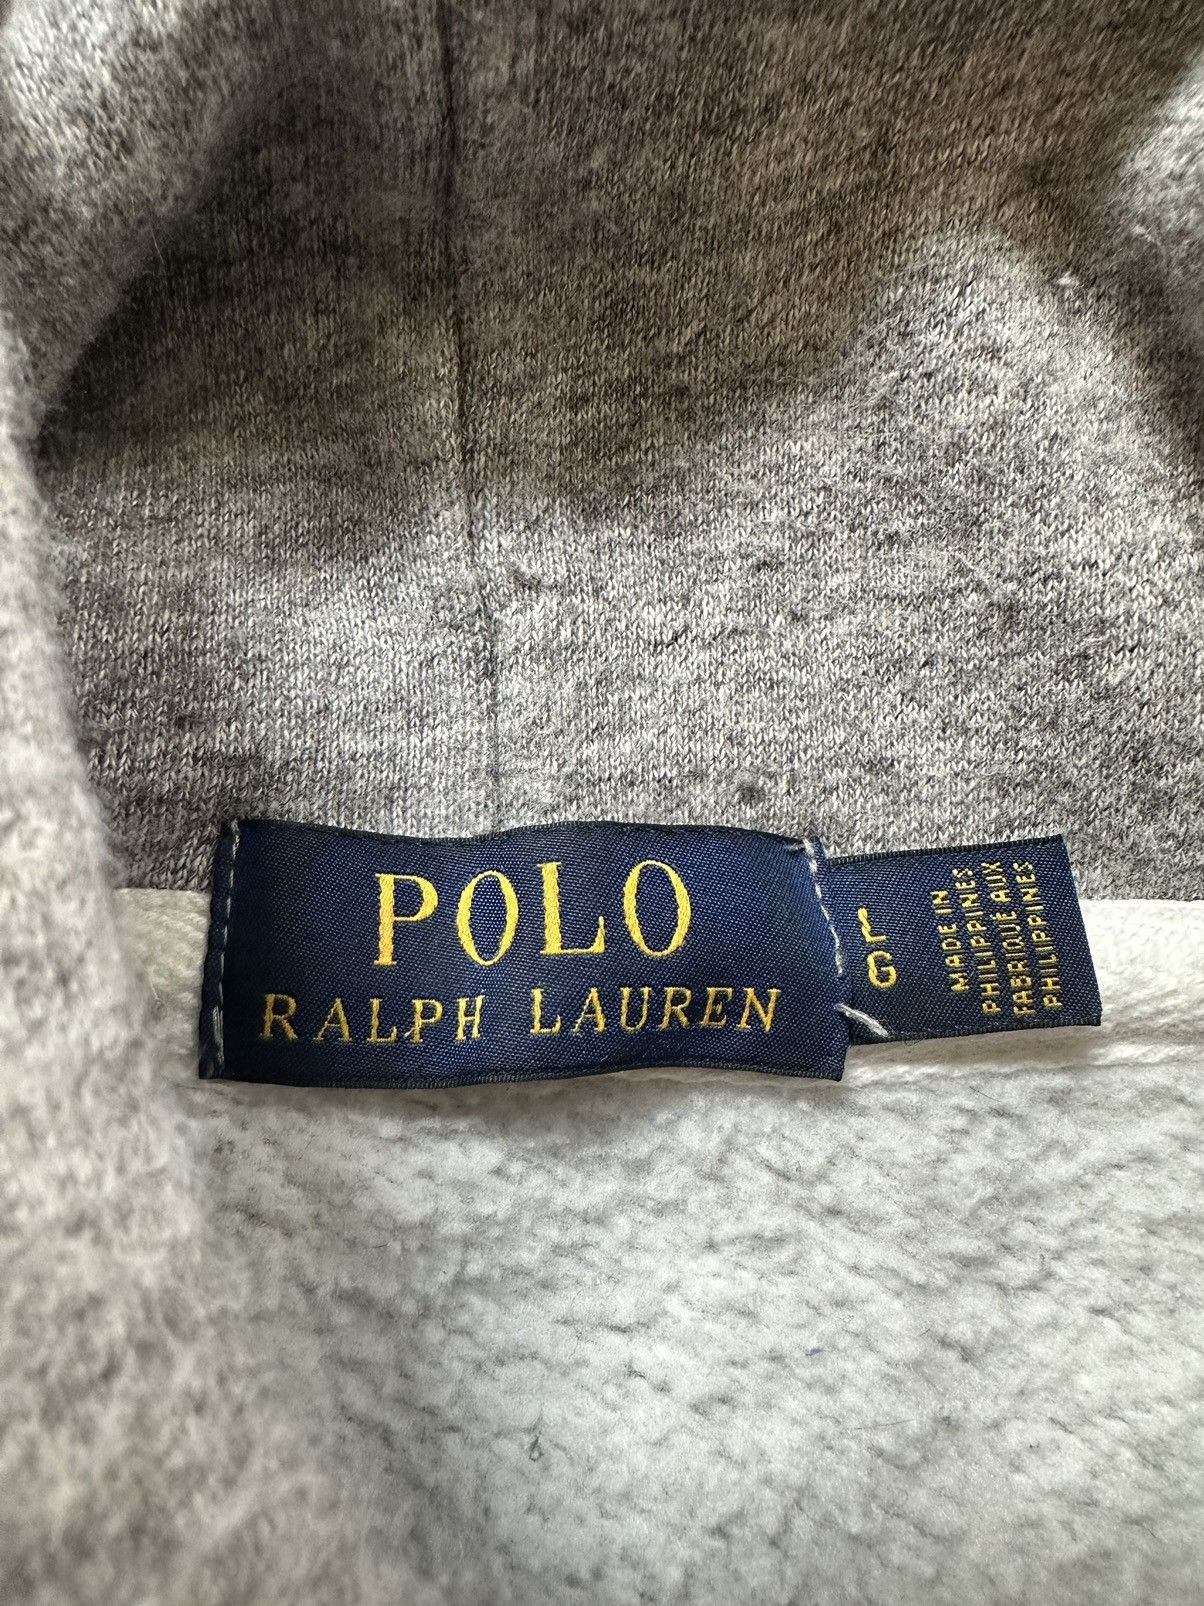 Polo Ralph Lauren Polo Ralph Lauren Size S Vintage Fleece Knit Graphic Rugby Size US L / EU 52-54 / 3 - 6 Thumbnail